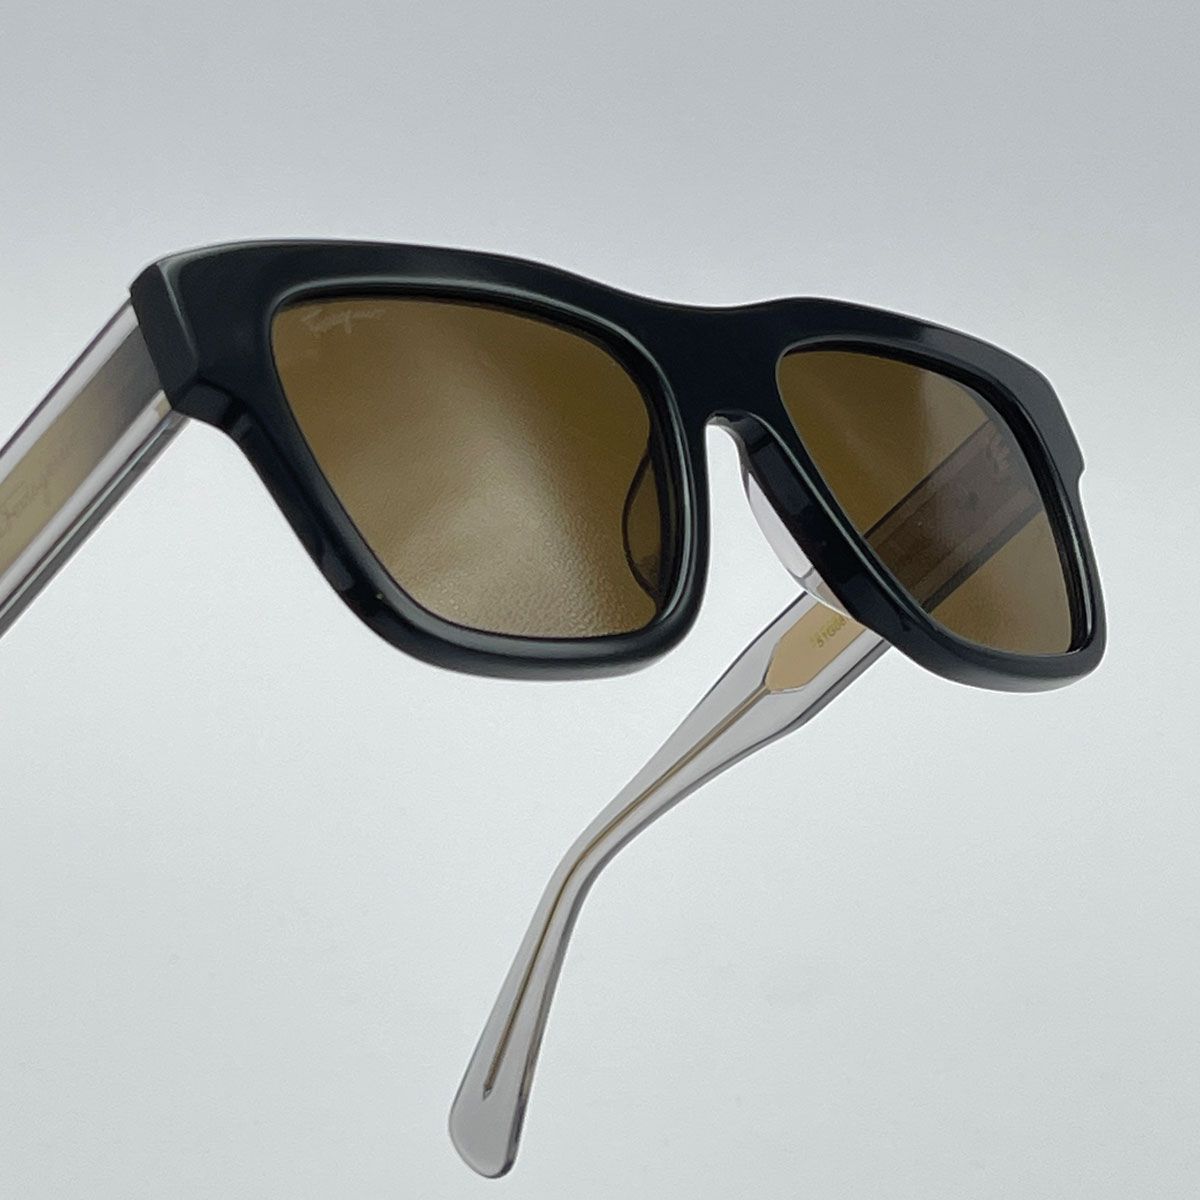 عینک آفتابی مردانه سالواتوره فراگامو مدل 51G087 - 746 -  - 6